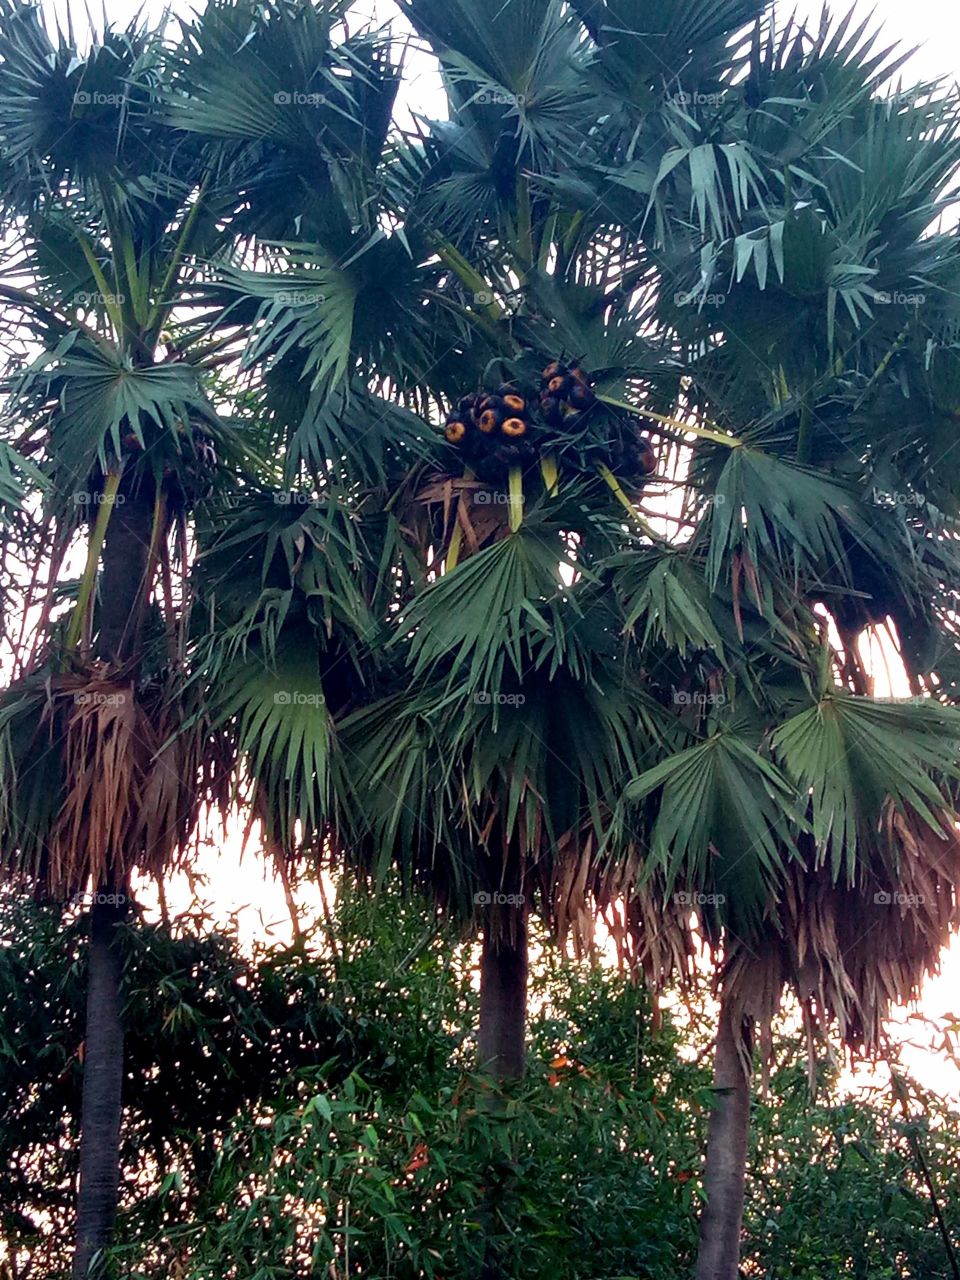 Asian palmyra palm